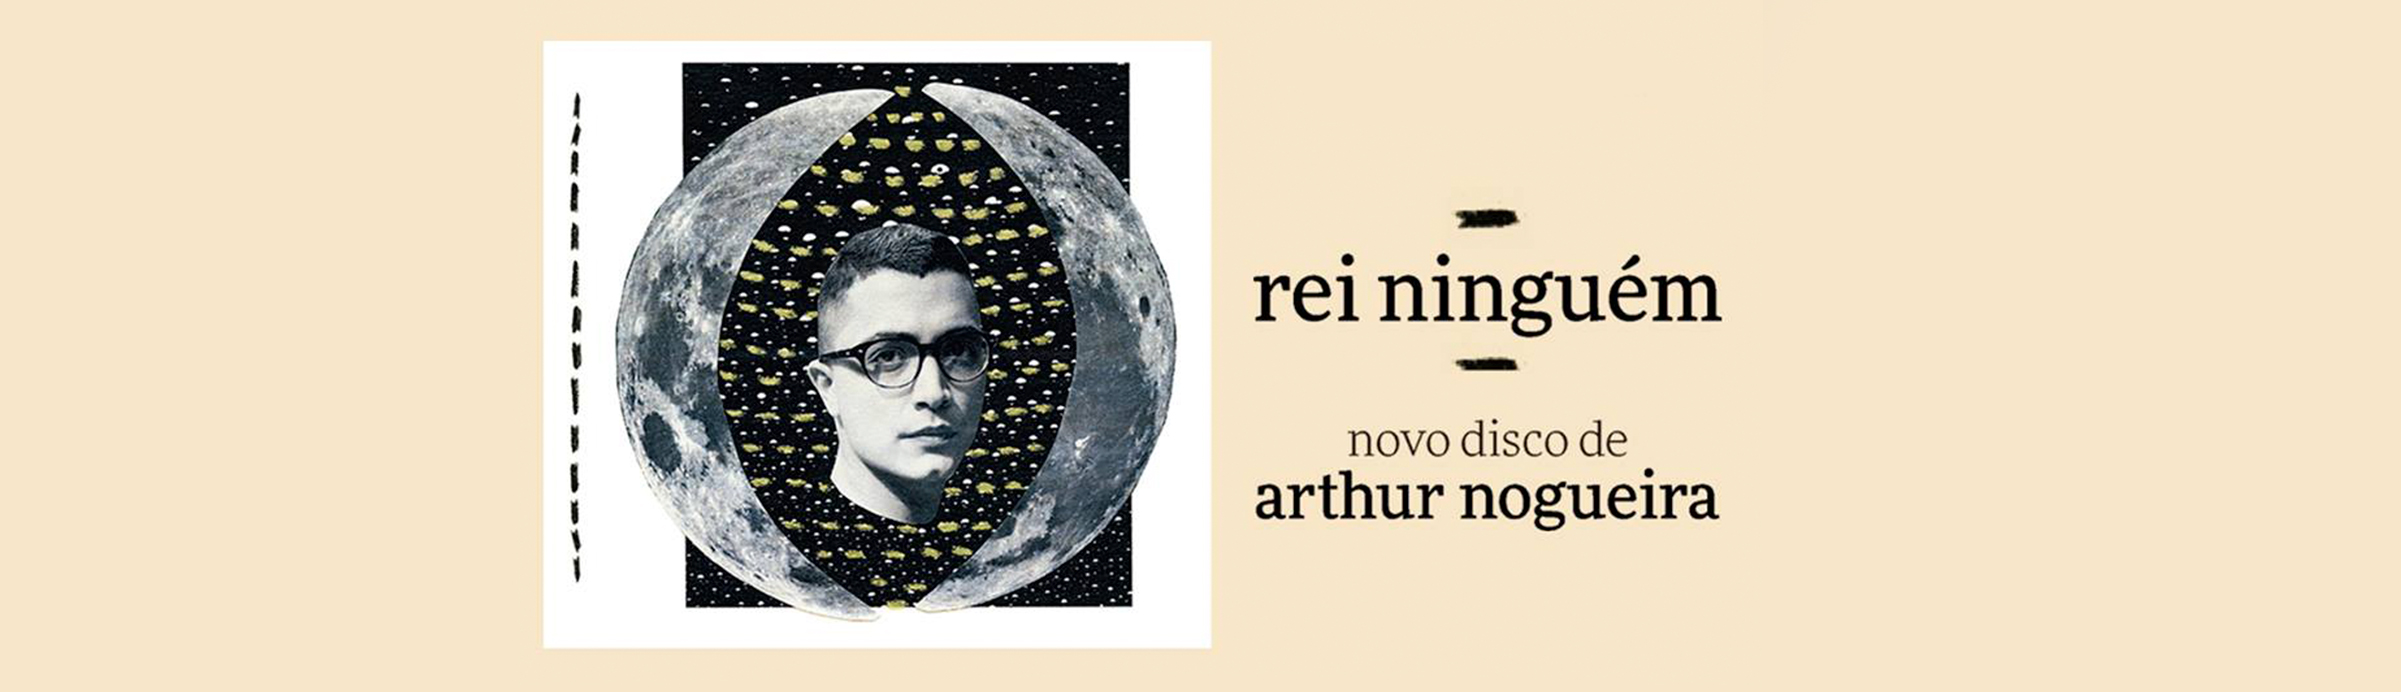 “Rei ninguém”, o manifesto orgânico de Arthur Nogueira